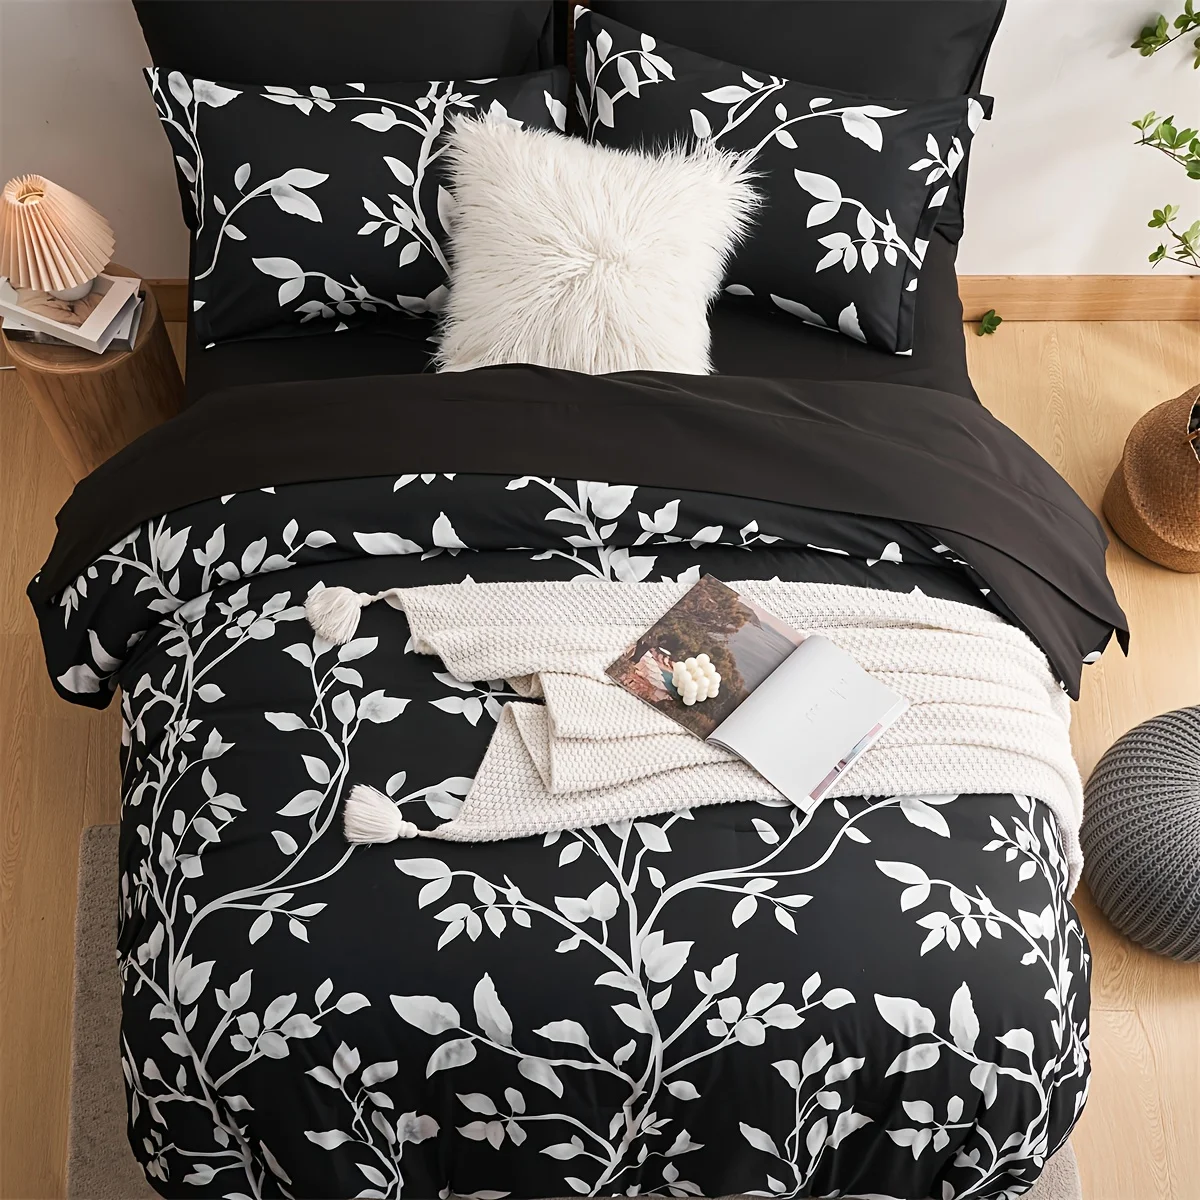 conjunto-de-cama-floral-comforter-1-folha-plana-1-folha-equipada-4-fronha-sem-enchimento-preto-e-branco-7pcs